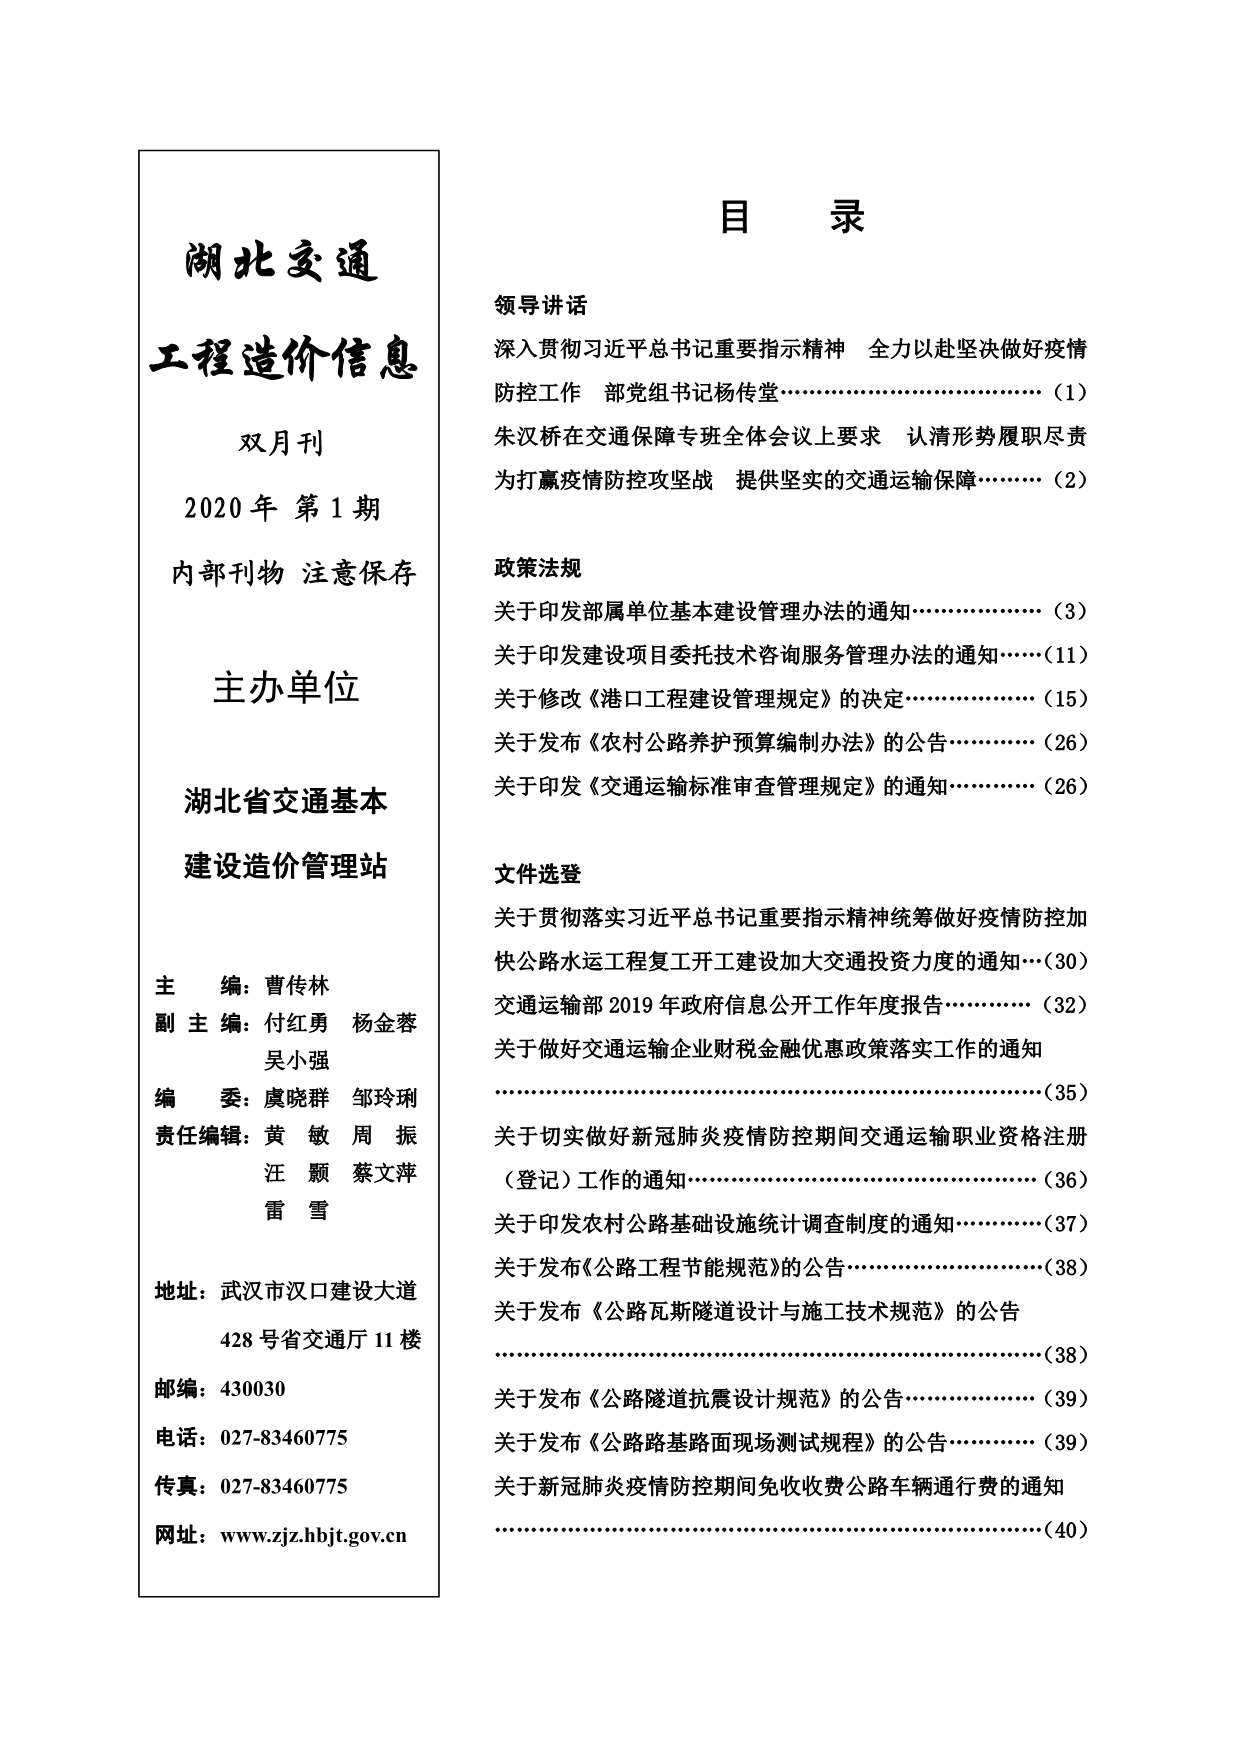 2020年1期湖北省交通交通工程造价信息期刊